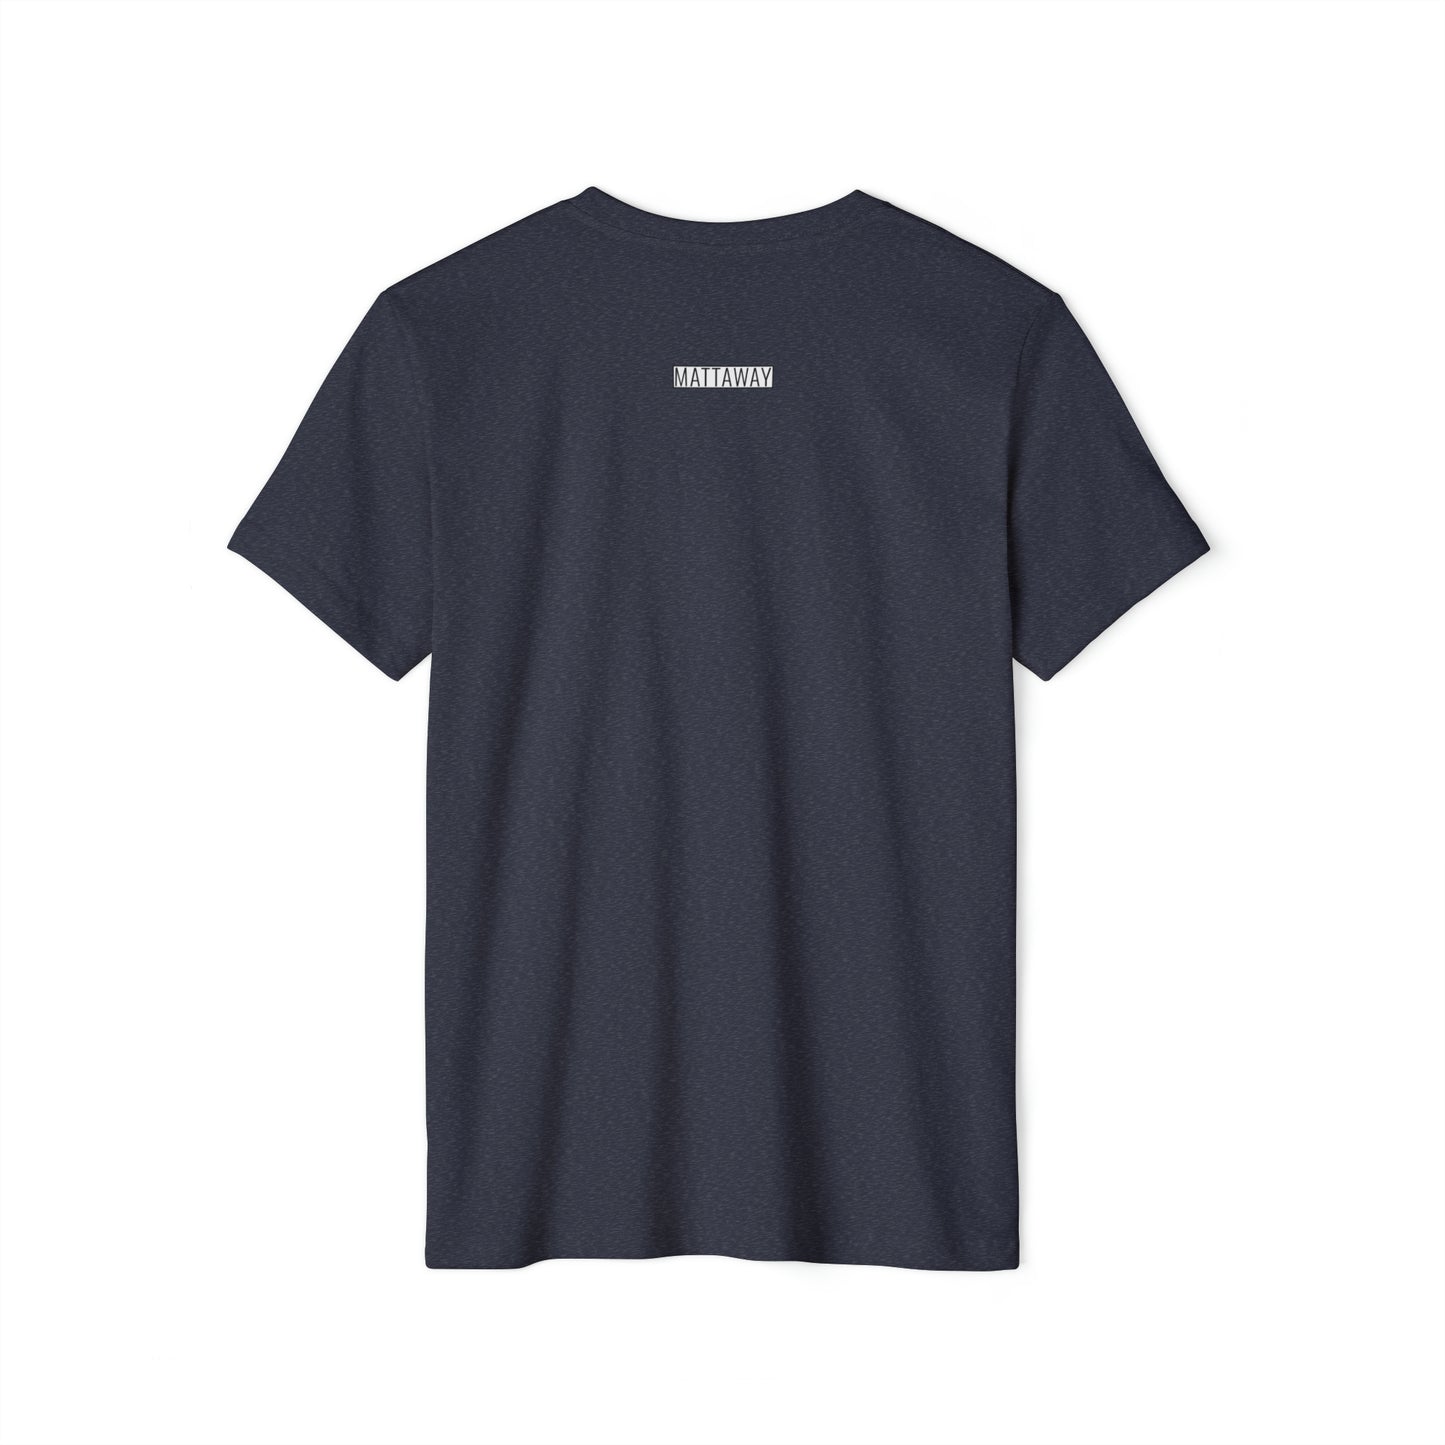 MINIMAL SHAPES 105 - Camiseta ecológica reciclada unisex